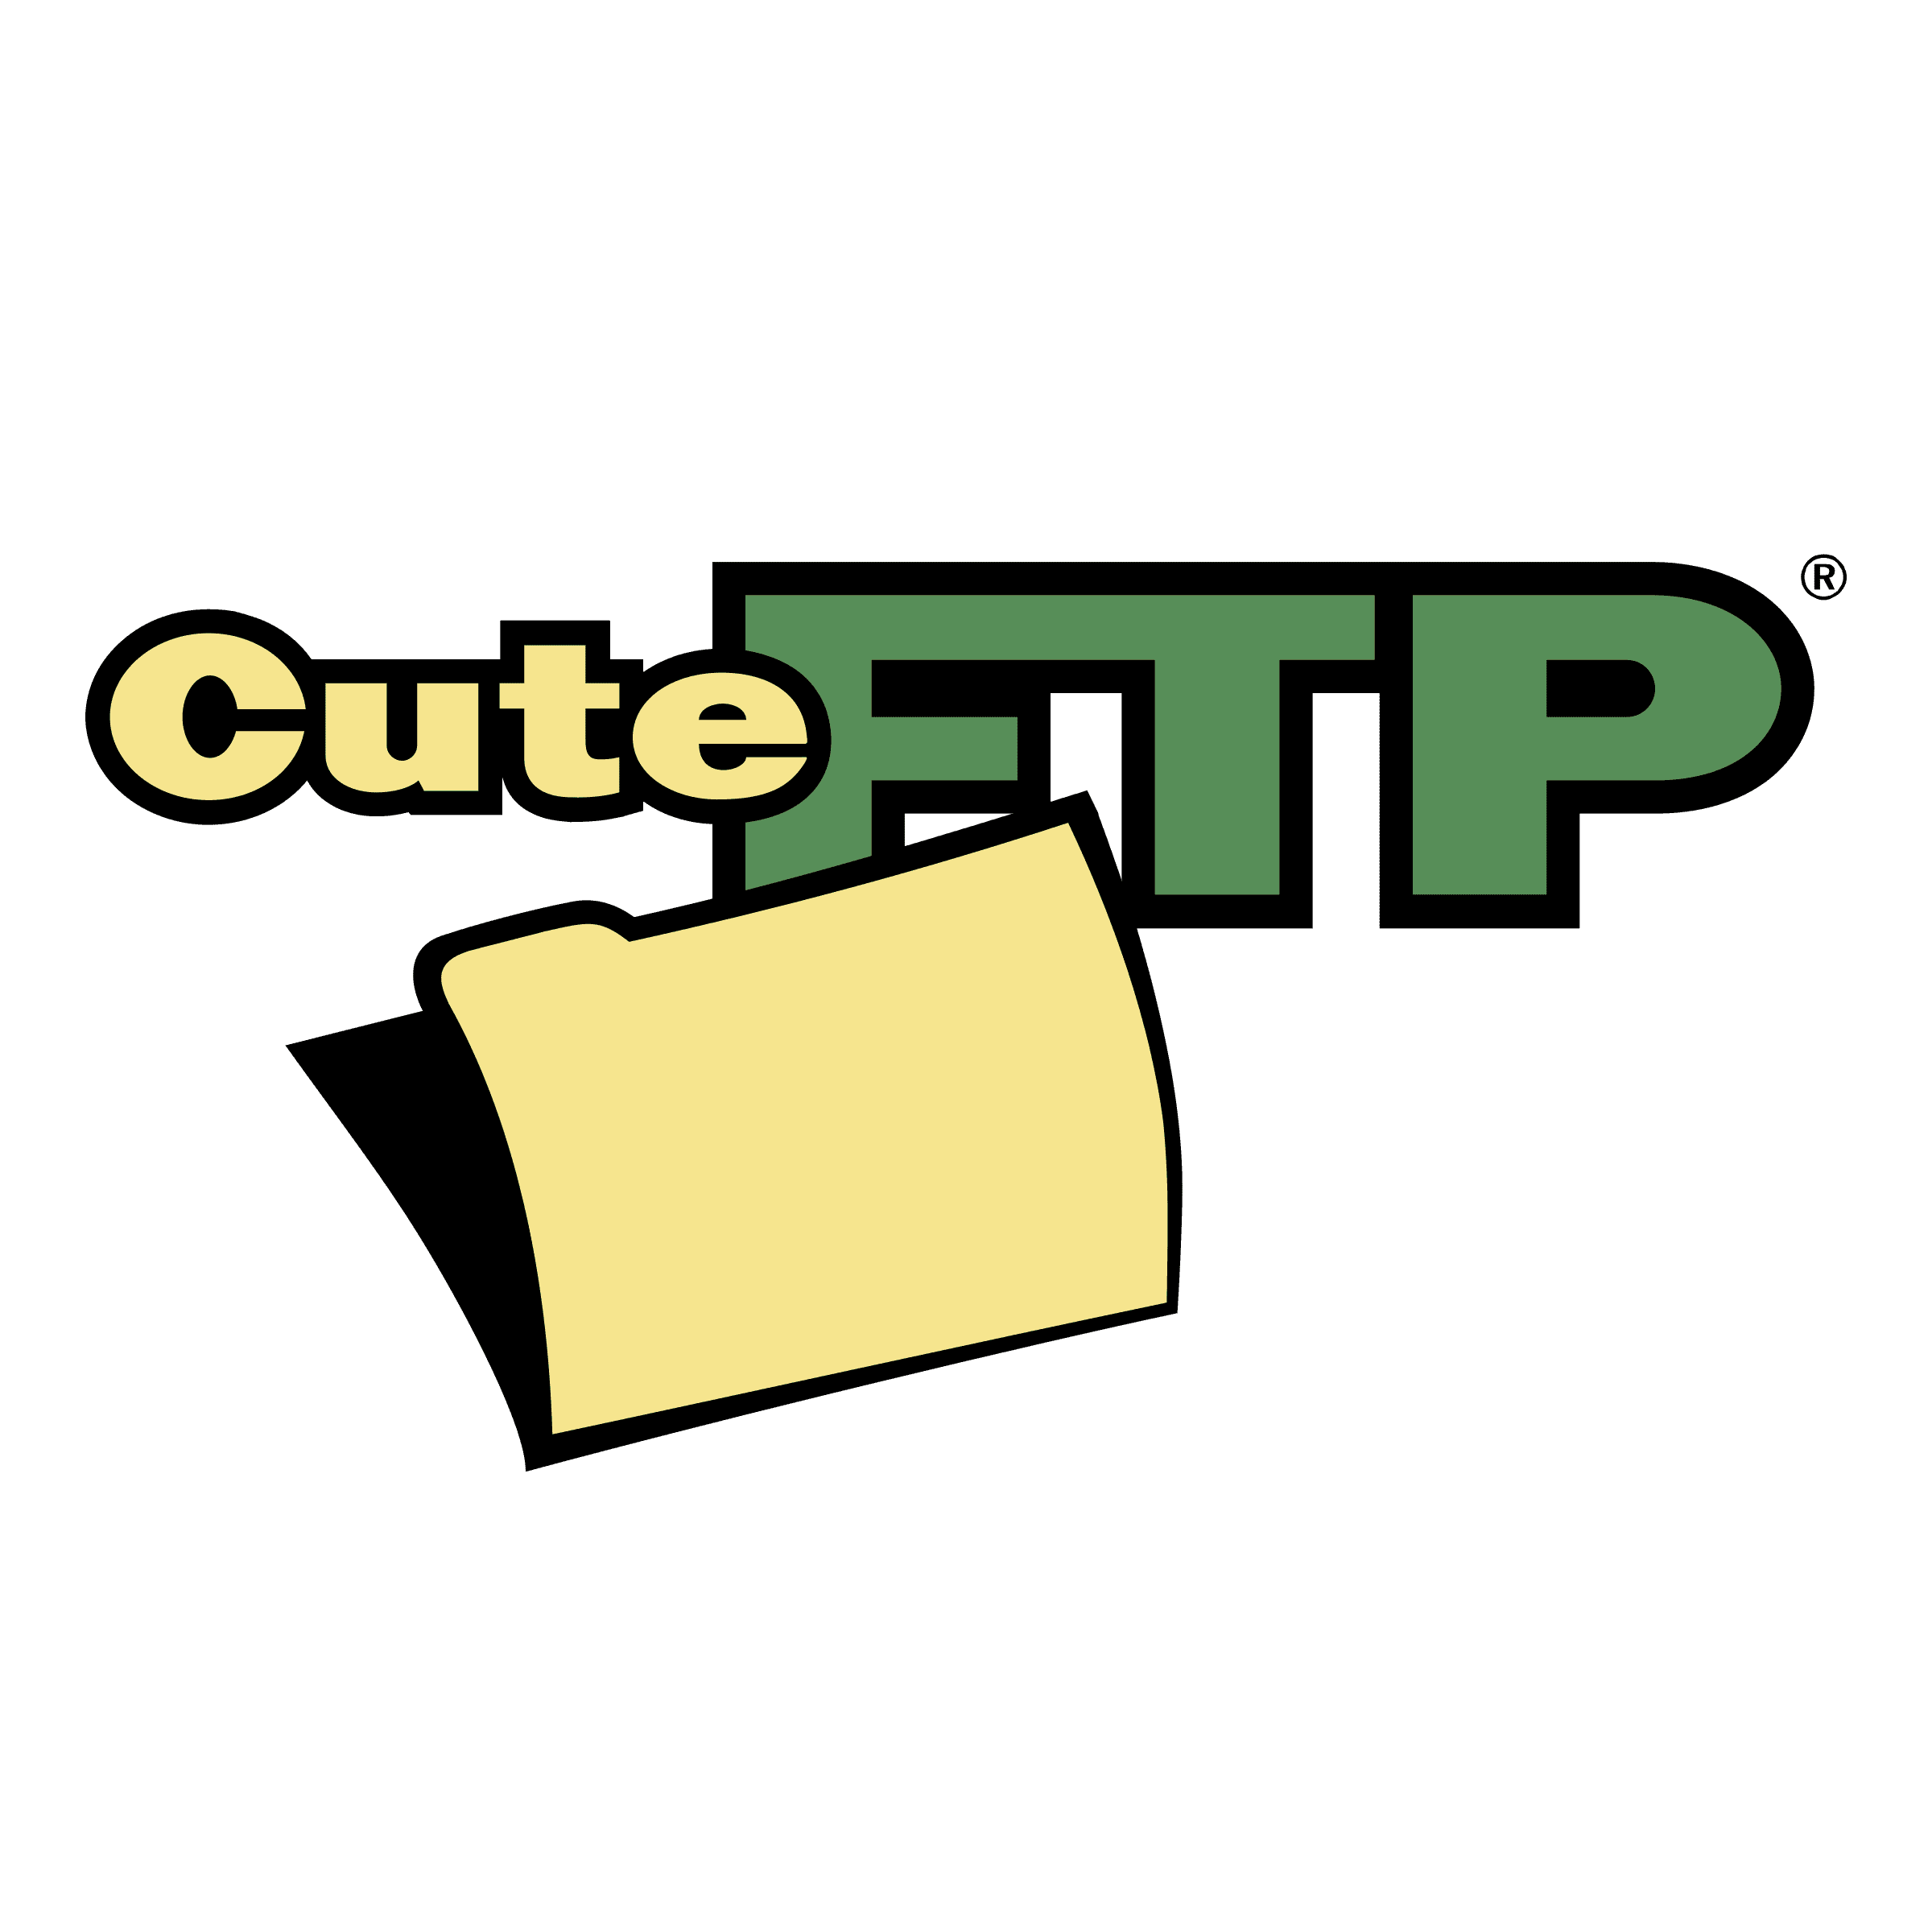 CuteFTP